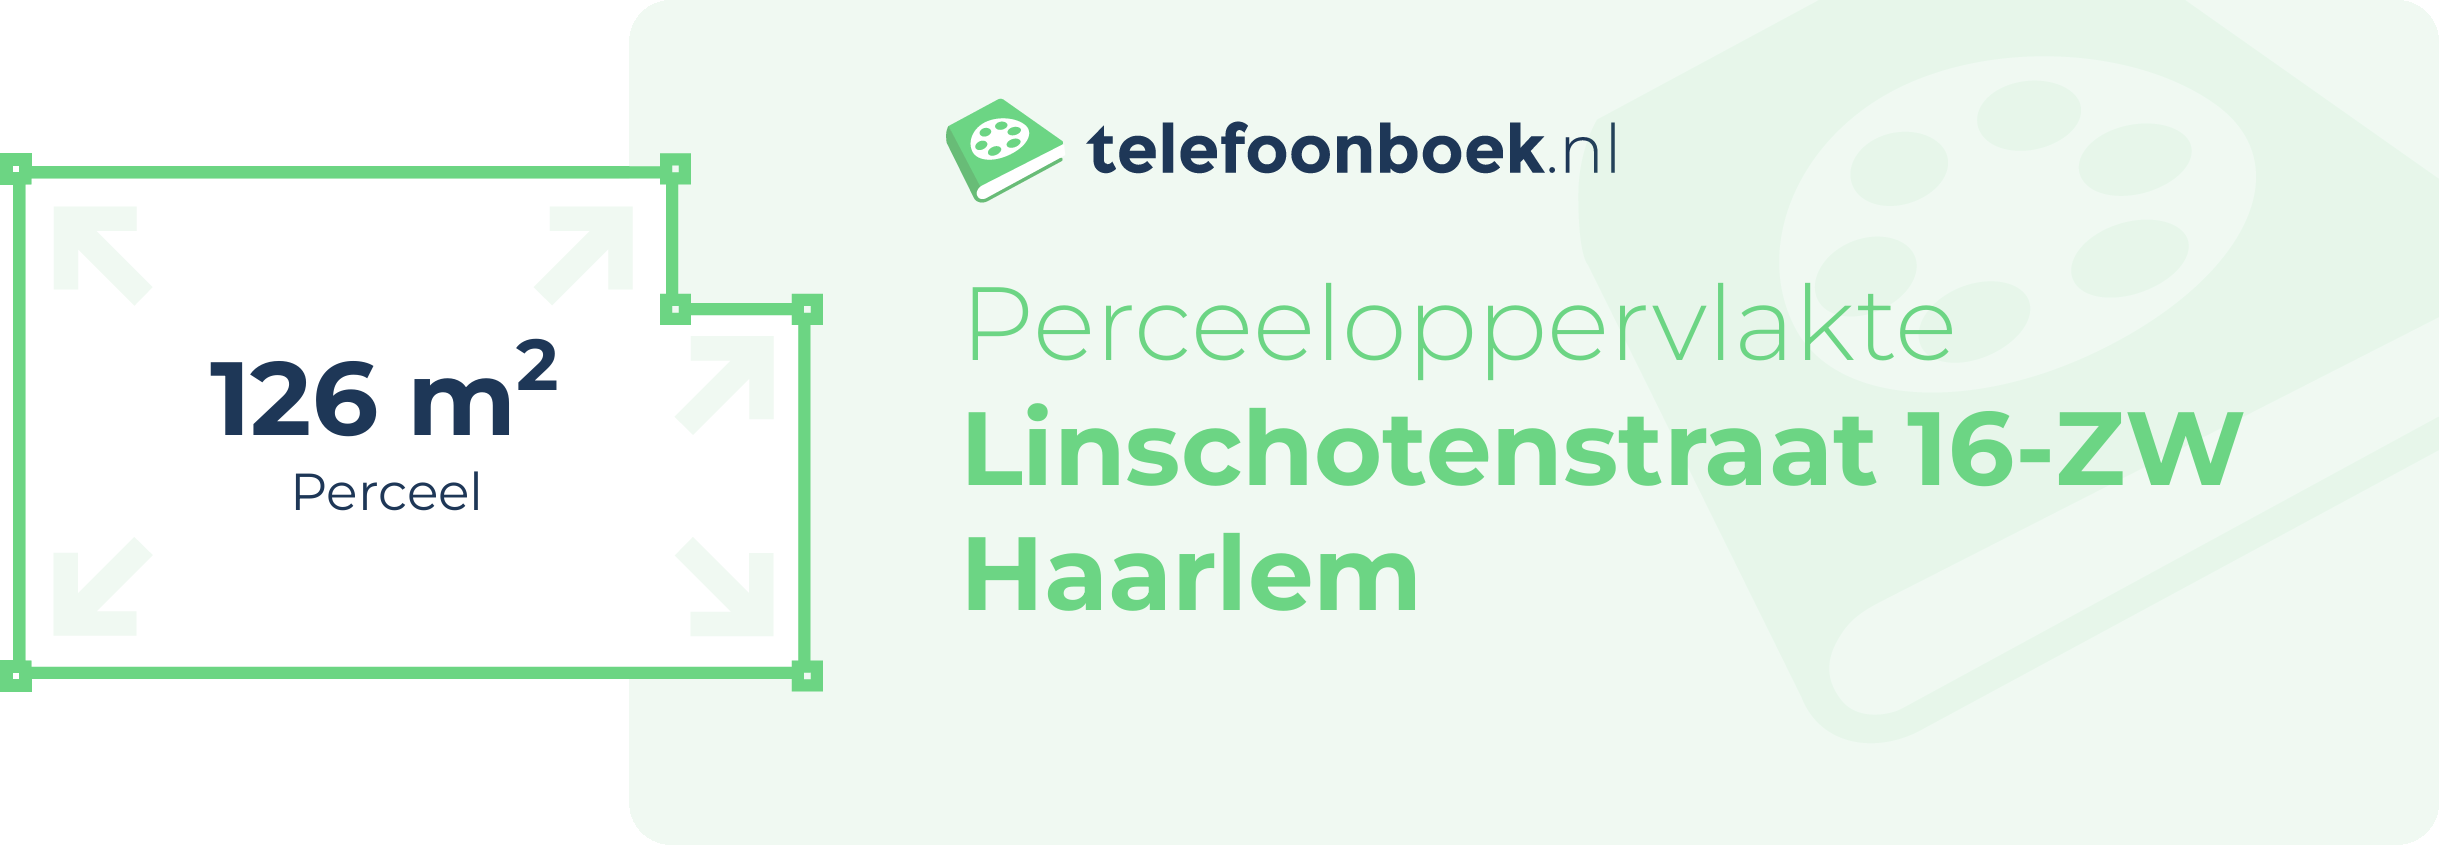 Perceeloppervlakte Linschotenstraat 16-ZW Haarlem